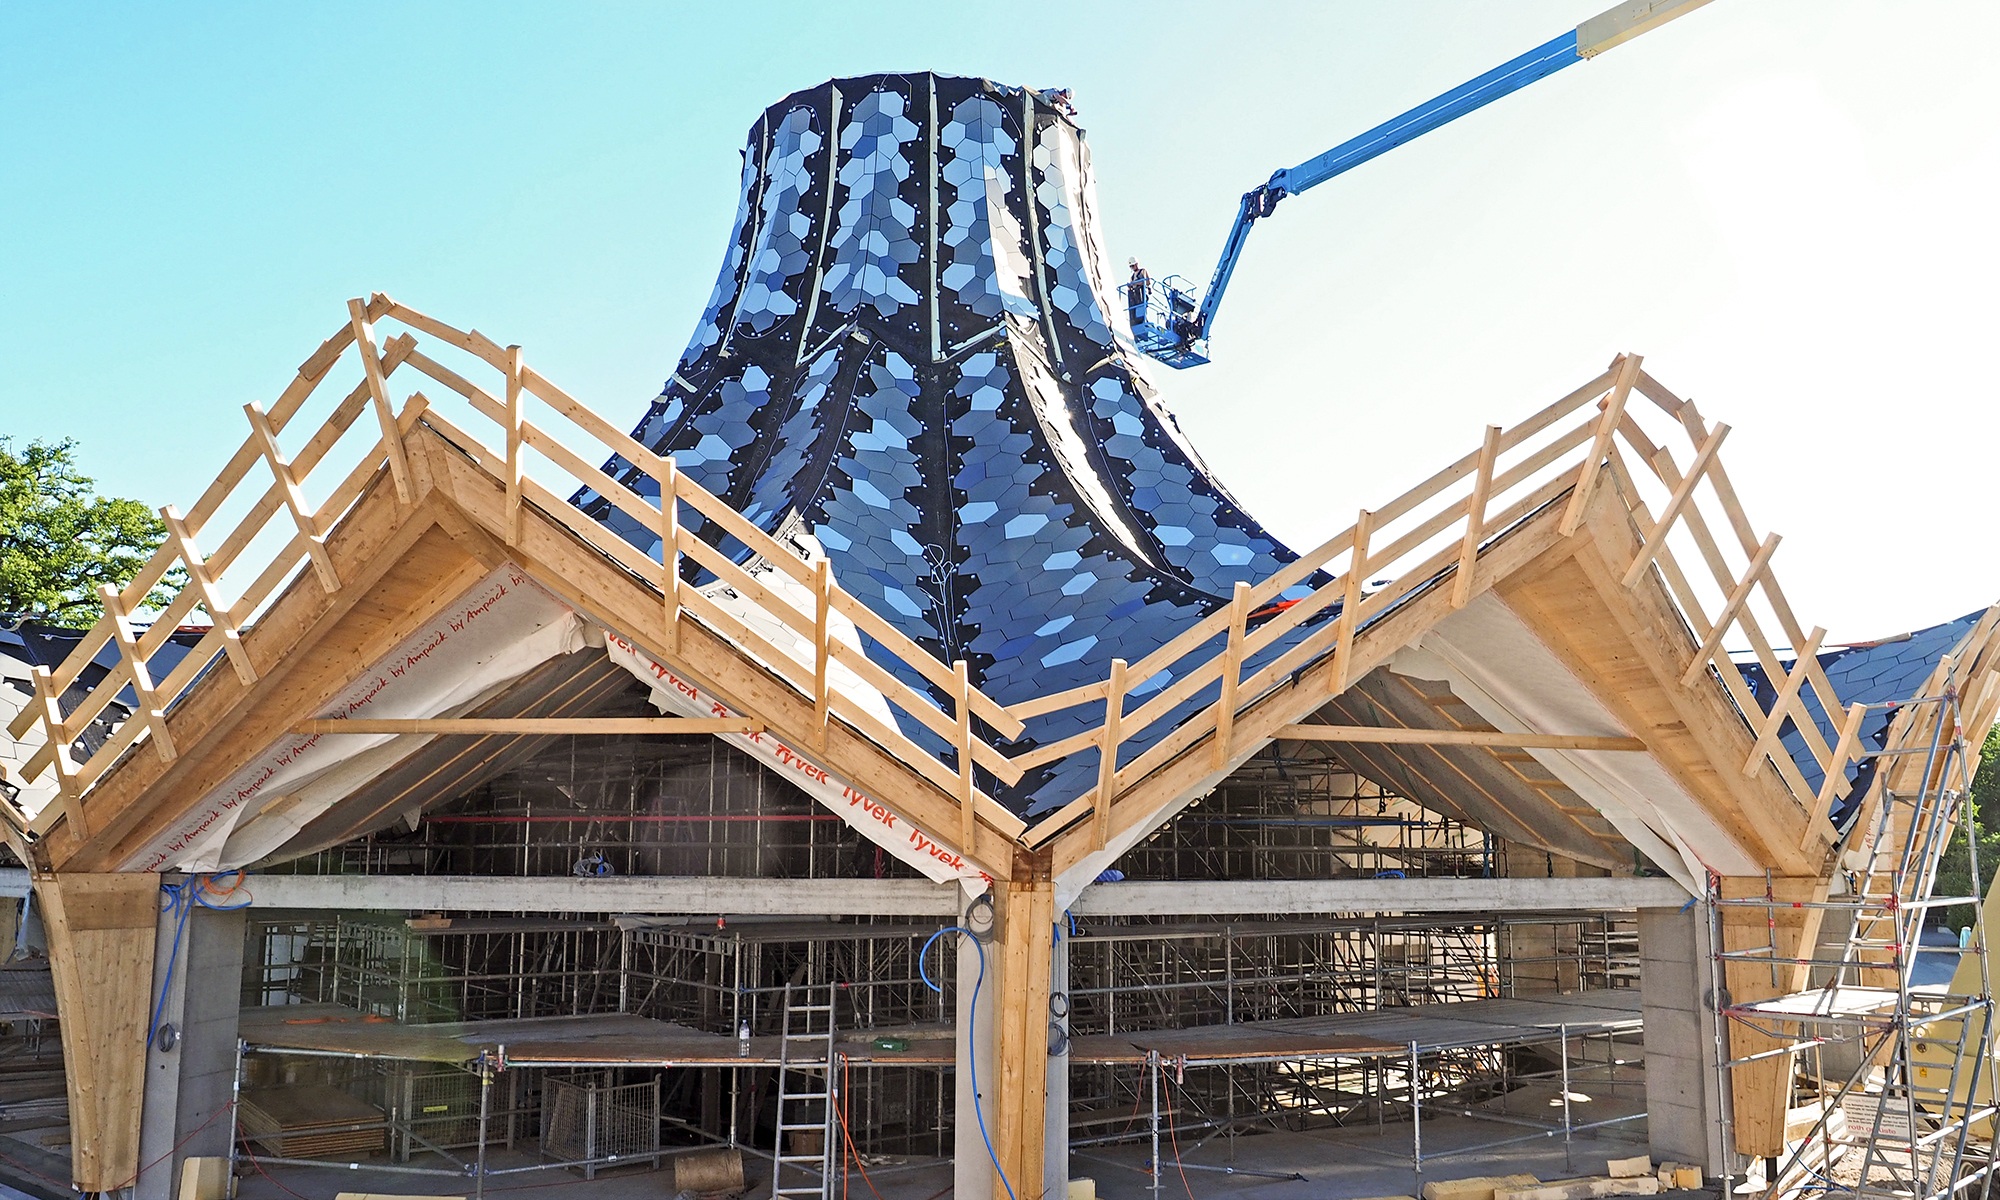 Der Zauberhut im Rohbau während den Bauarbeiten am Holzdach